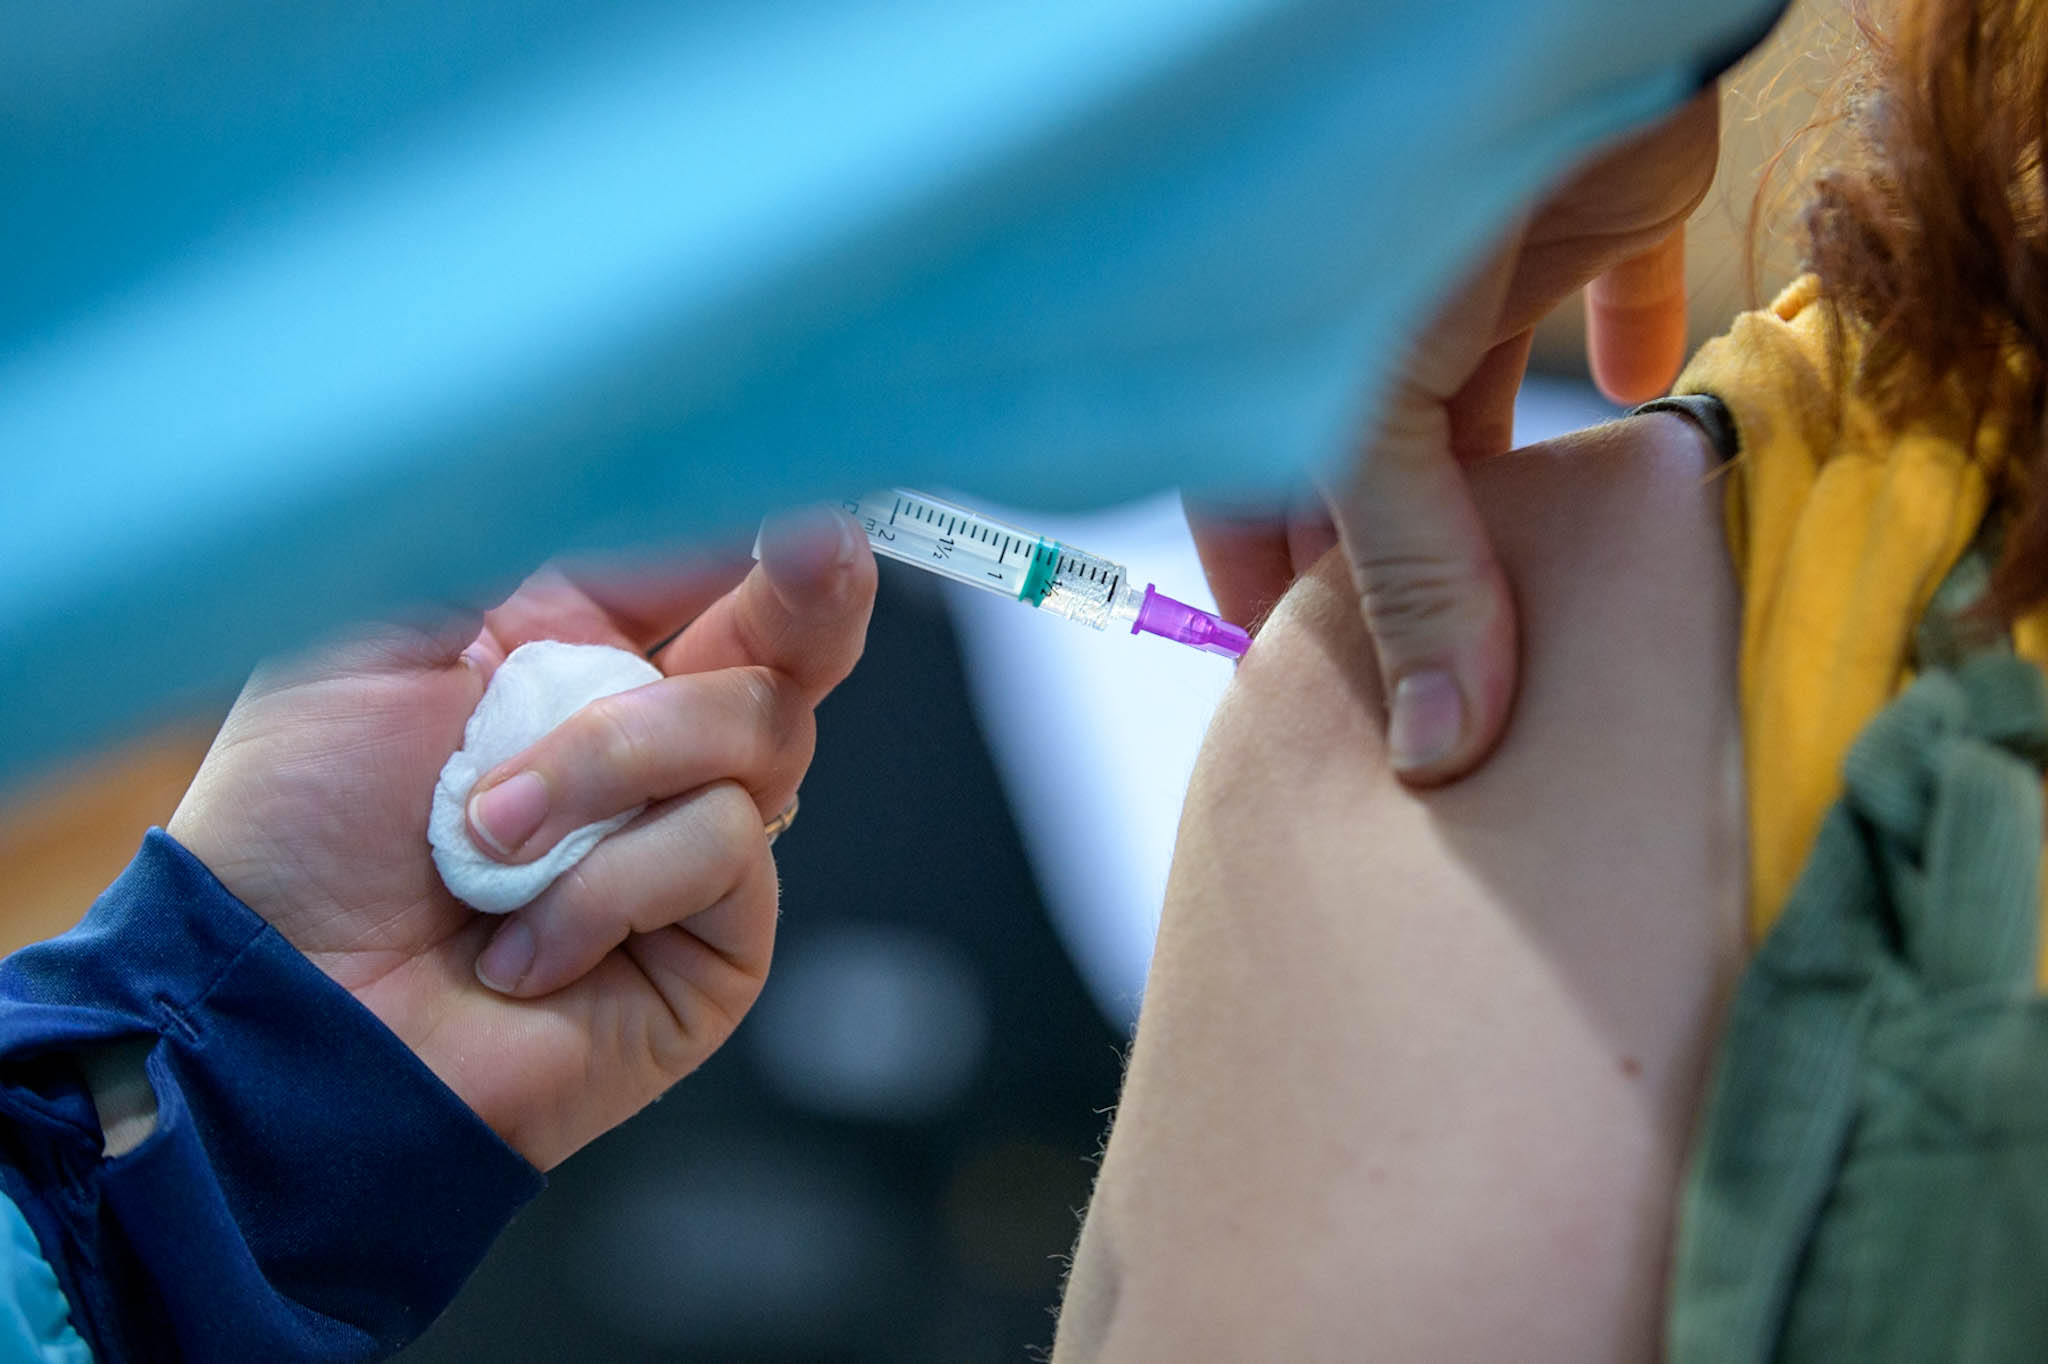 Bo v ZDA za zvezne uslužbence cepljenje obvezno?